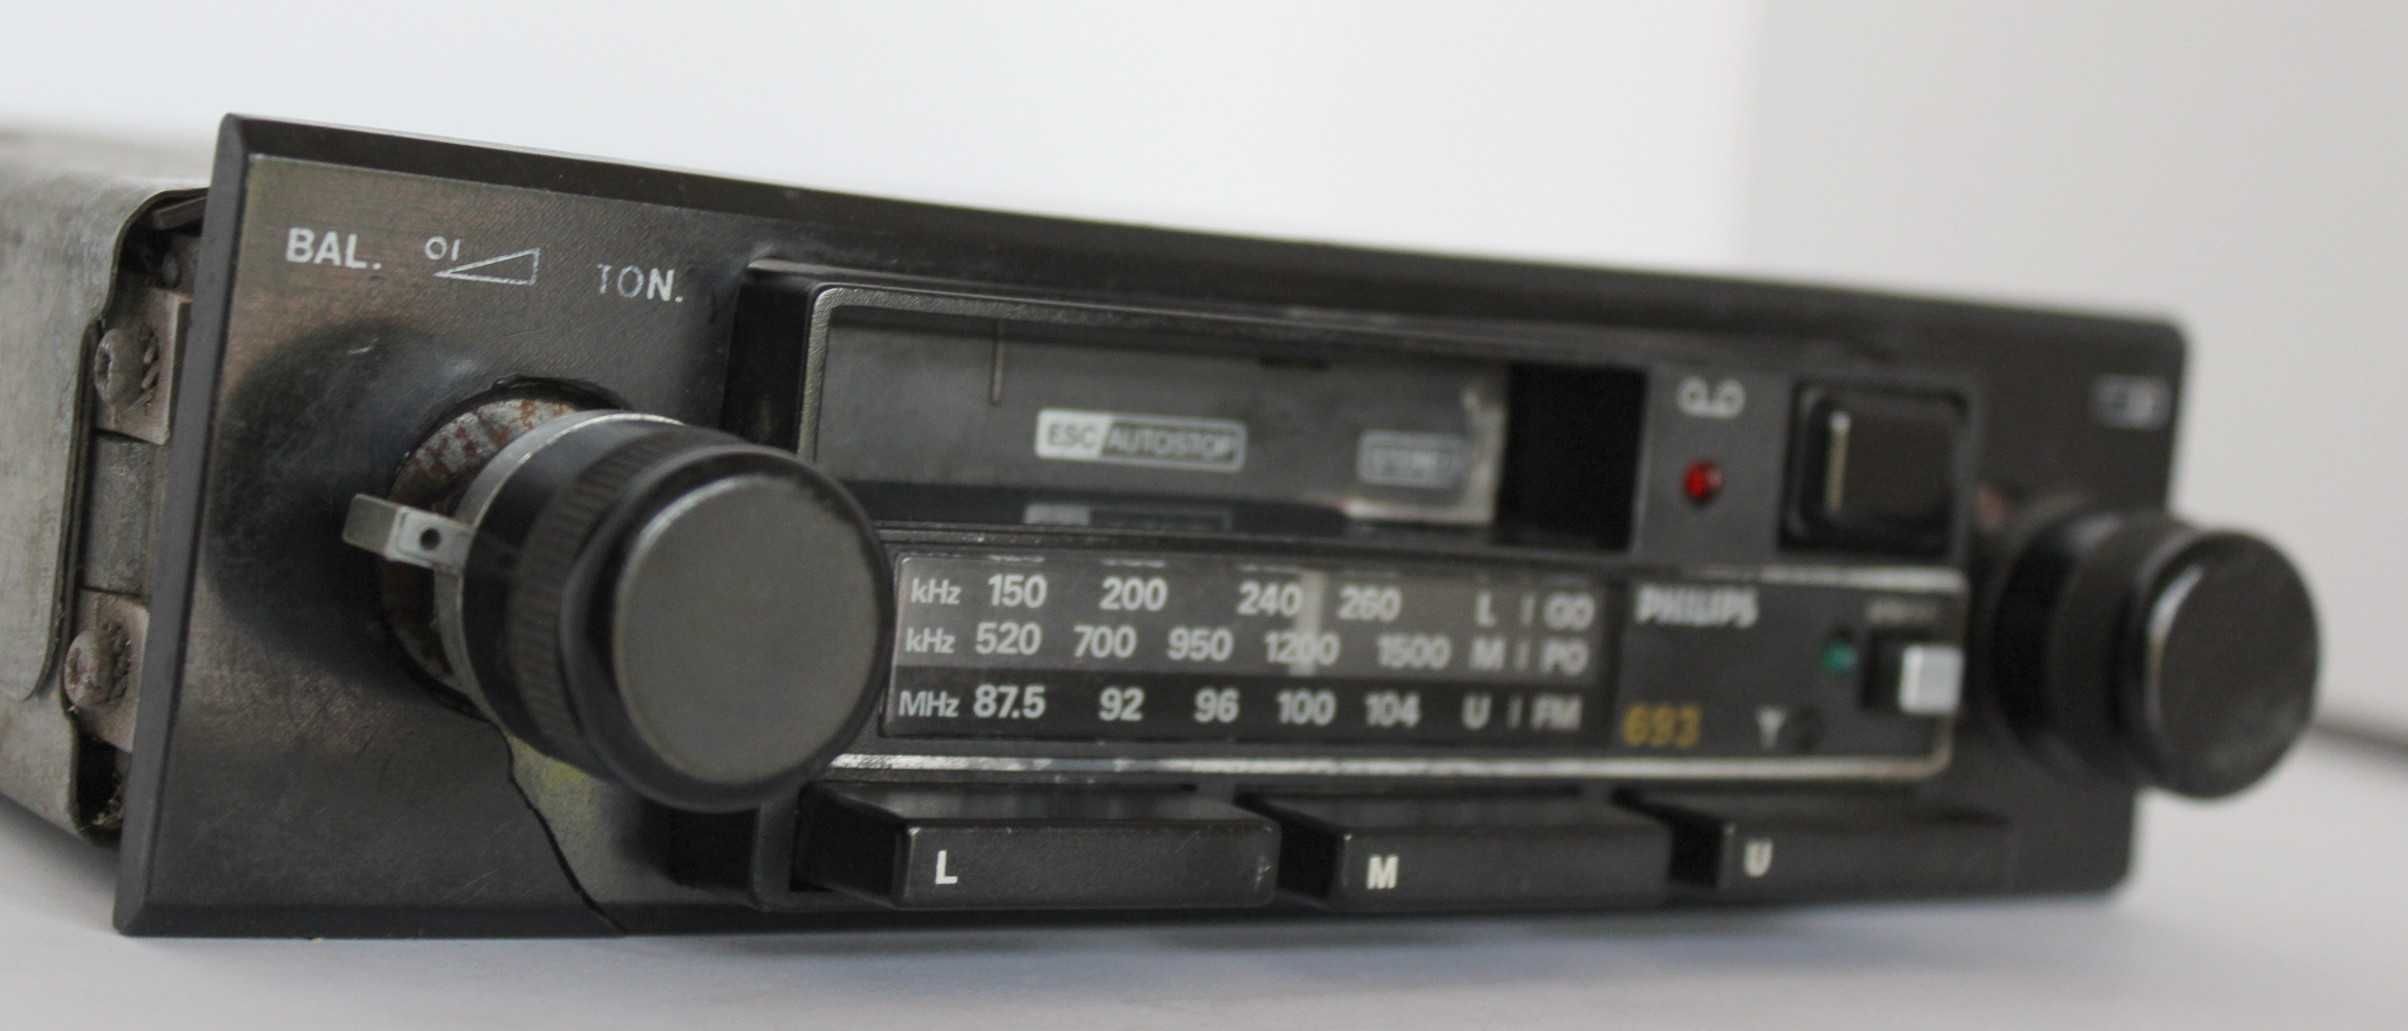 radio stare   PHILIPS 693 sprawne grające  do klasyka stereo analogowe